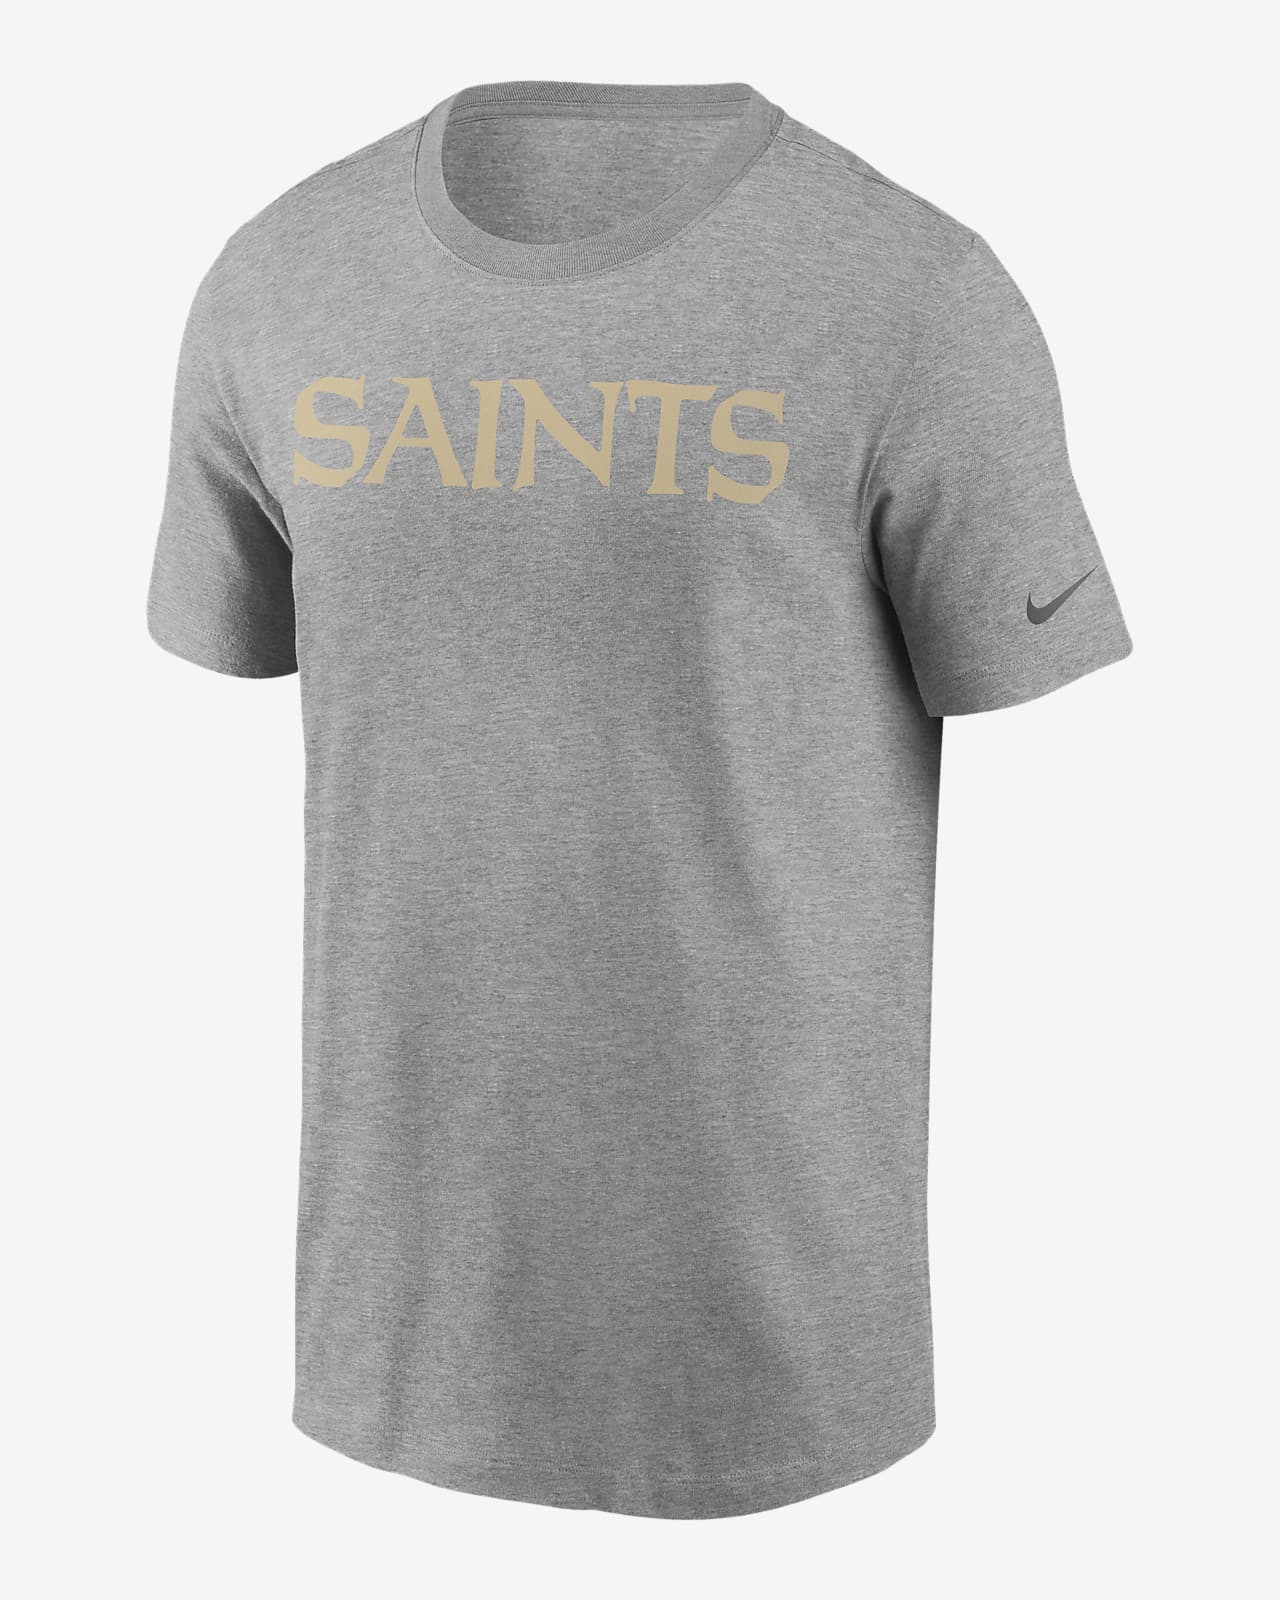 saints nike shirt